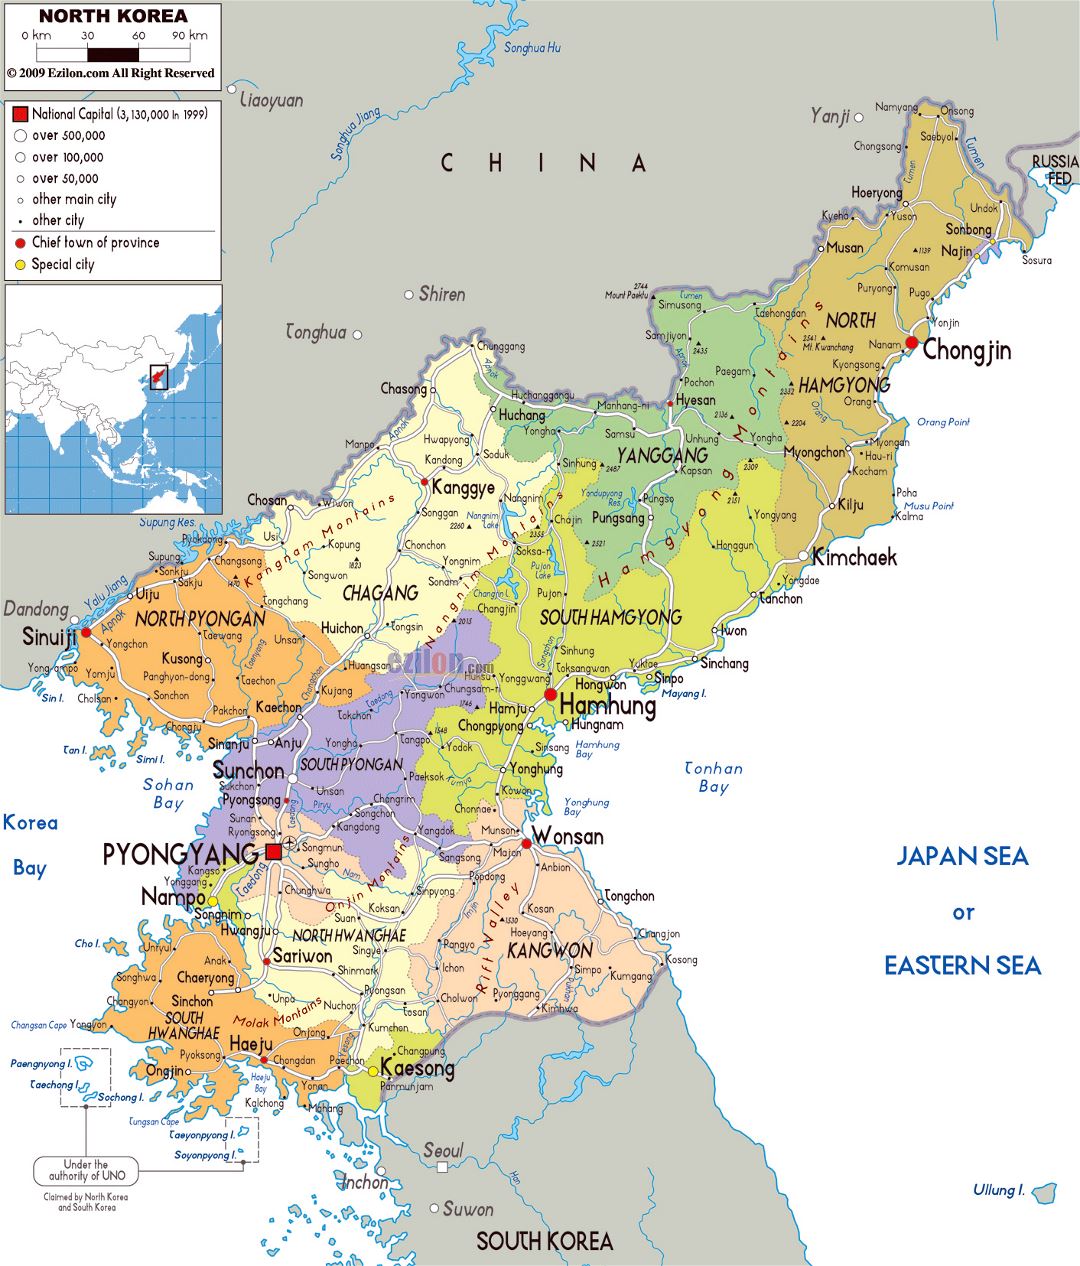 Grande mapa político y administrativo de Corea del Norte con carreteras, ciudades y aeropuertos